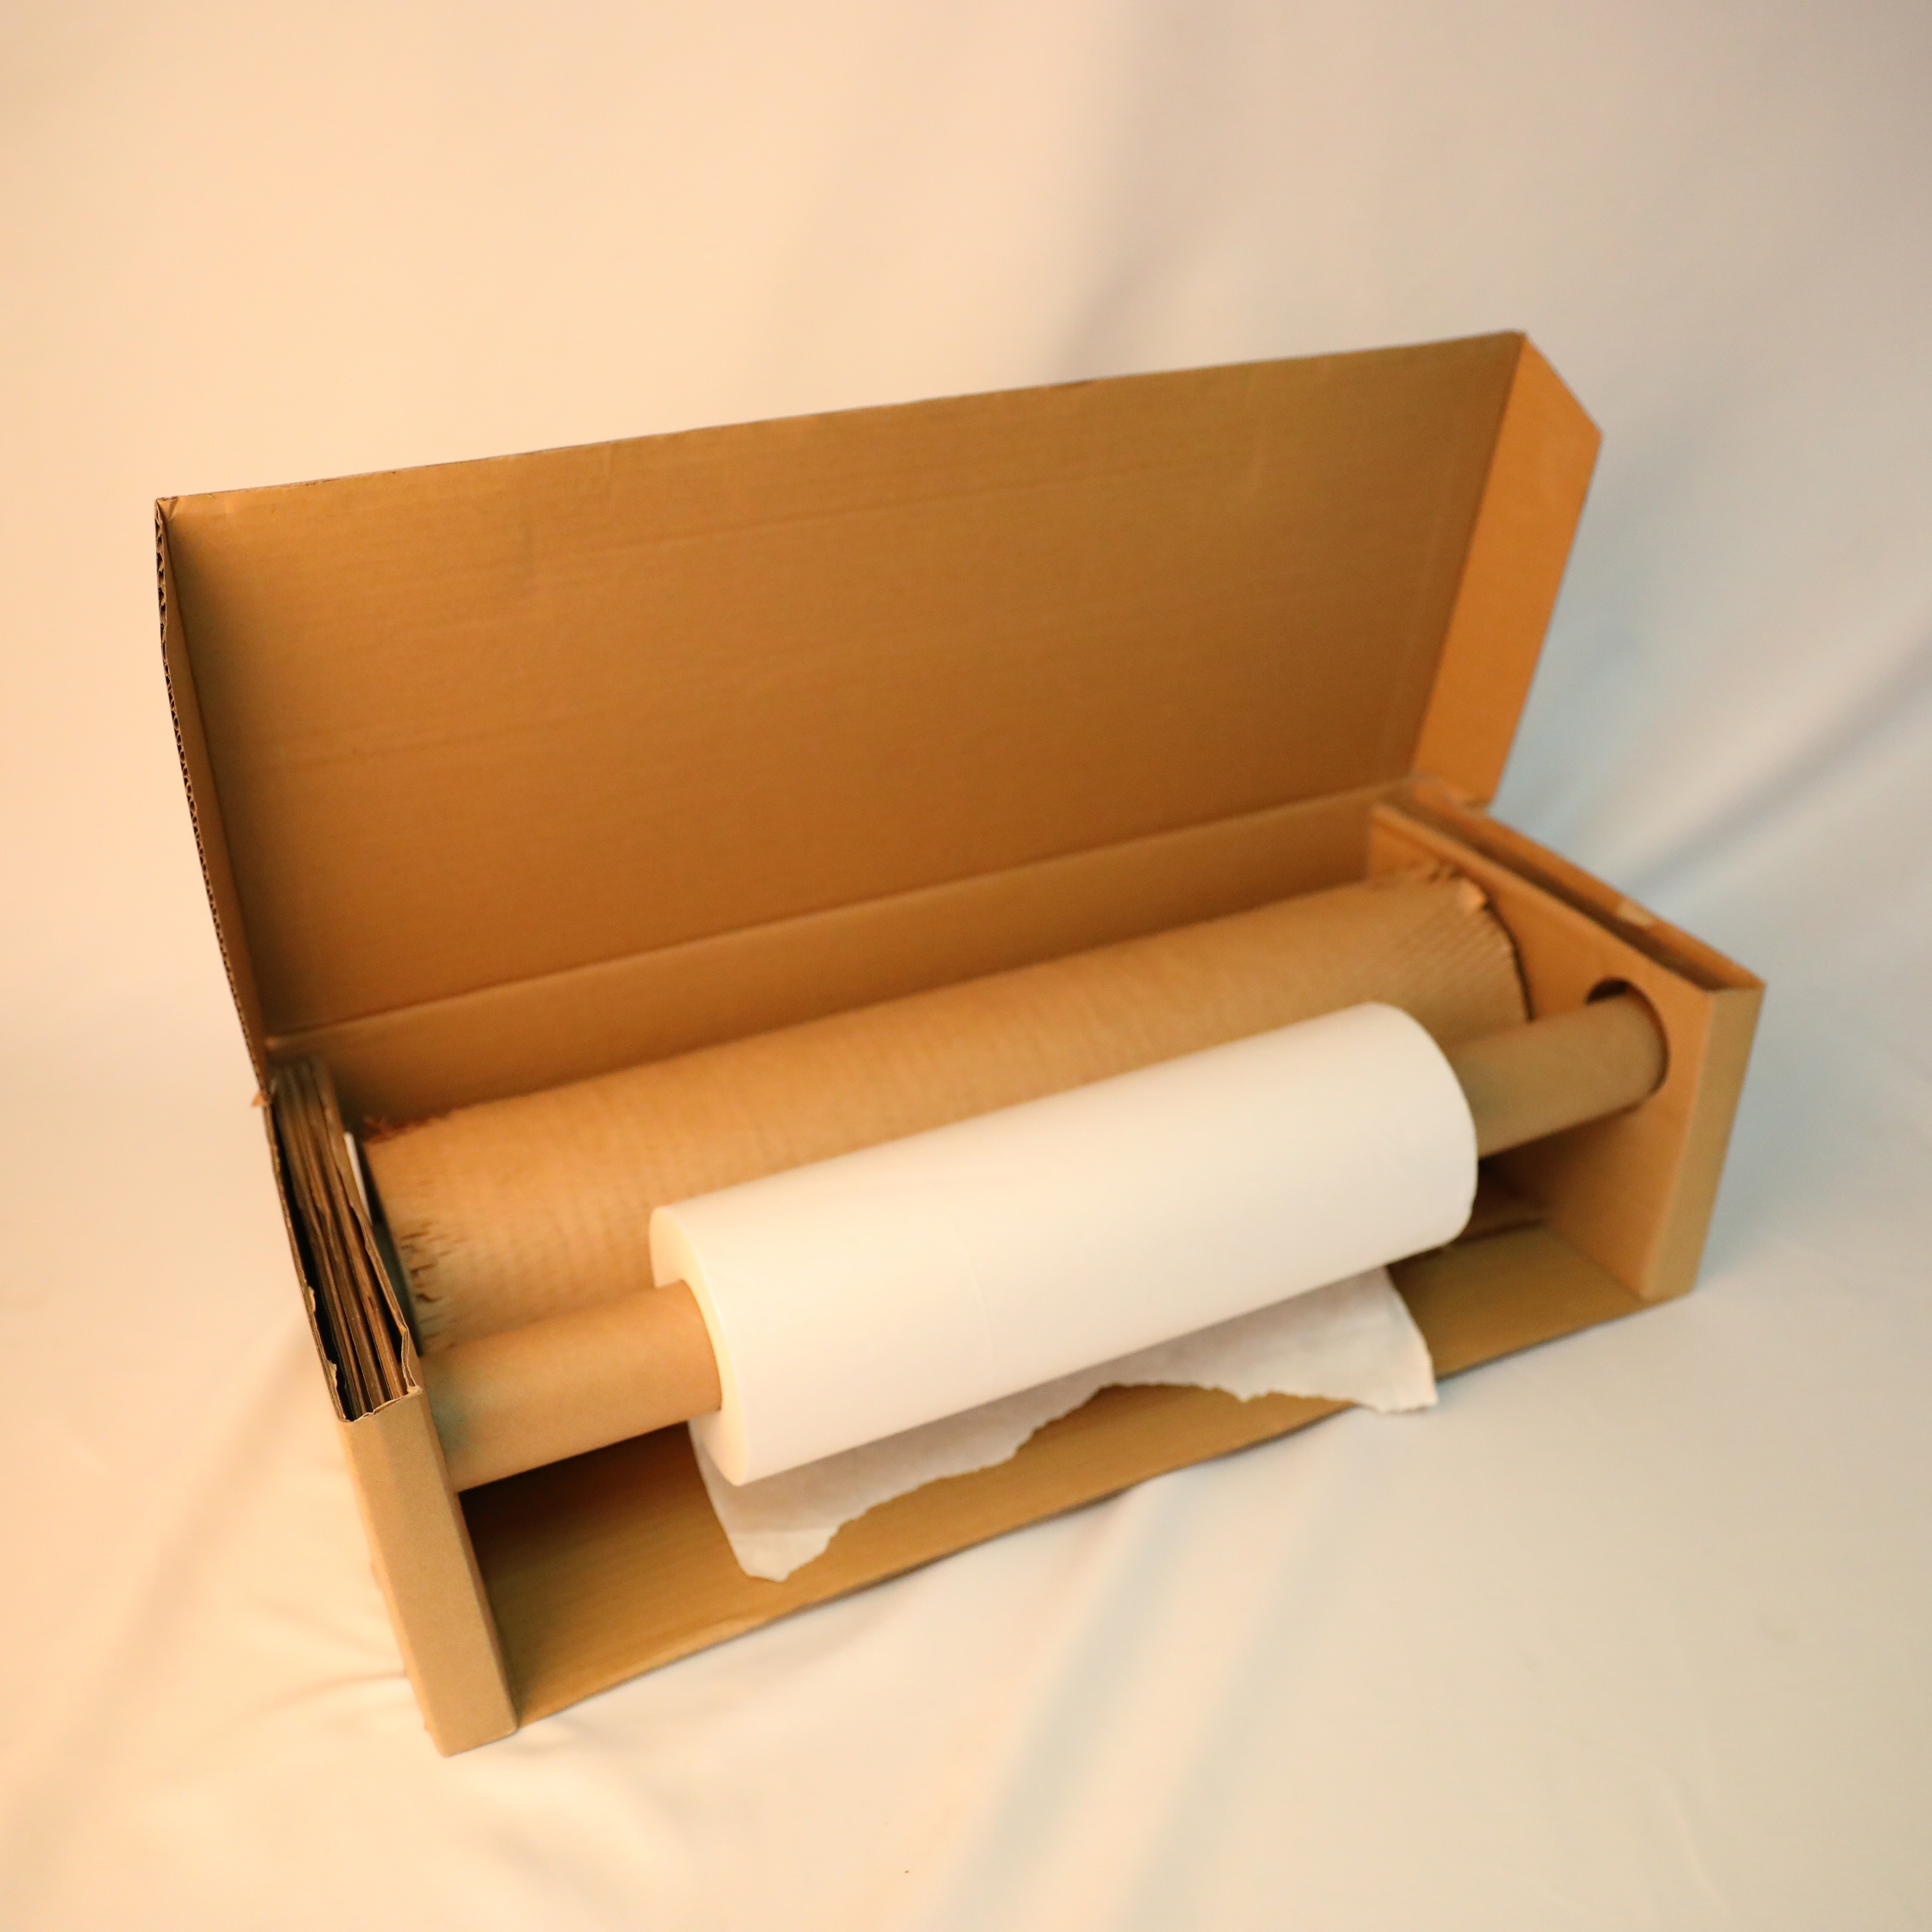 商品を梱包するためのリサイクル可能なハニカム紙ロール